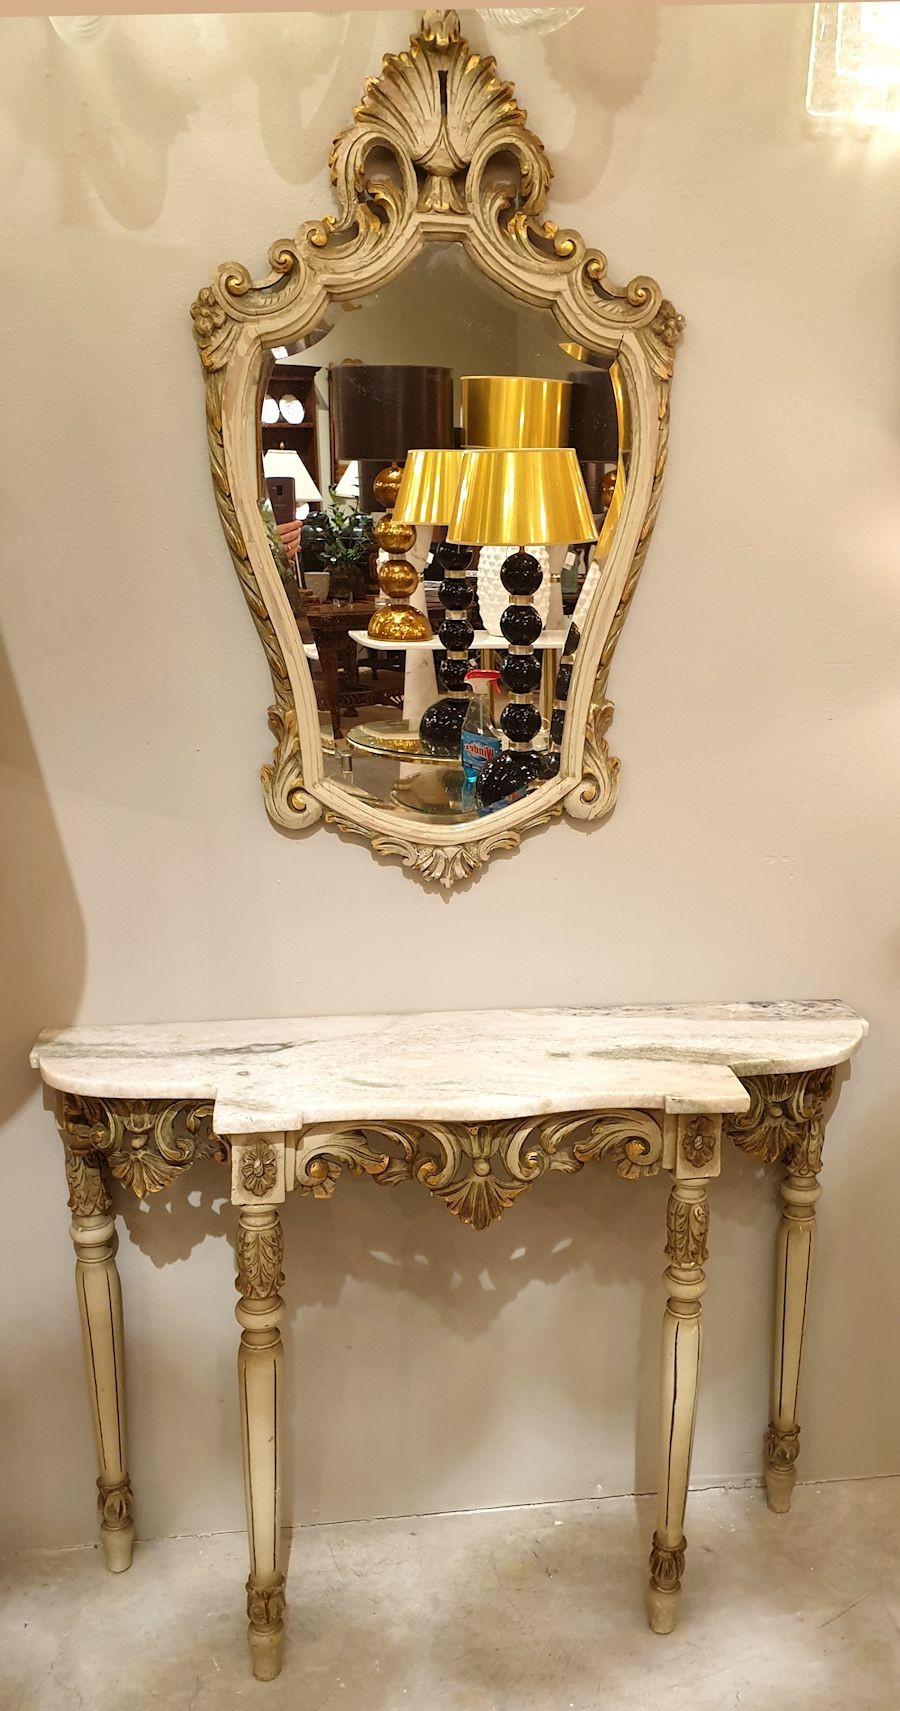 Set bestehend aus einem dekorativen Konsolentisch mit vier Beinen und einem passenden großen Wandspiegel. Louis XV-Stil, Frankreich 1920er Jahre oder früher.
Der neoklassische Konsolentisch mit Spiegel ist aus vergoldetem und hellgrün lackiertem